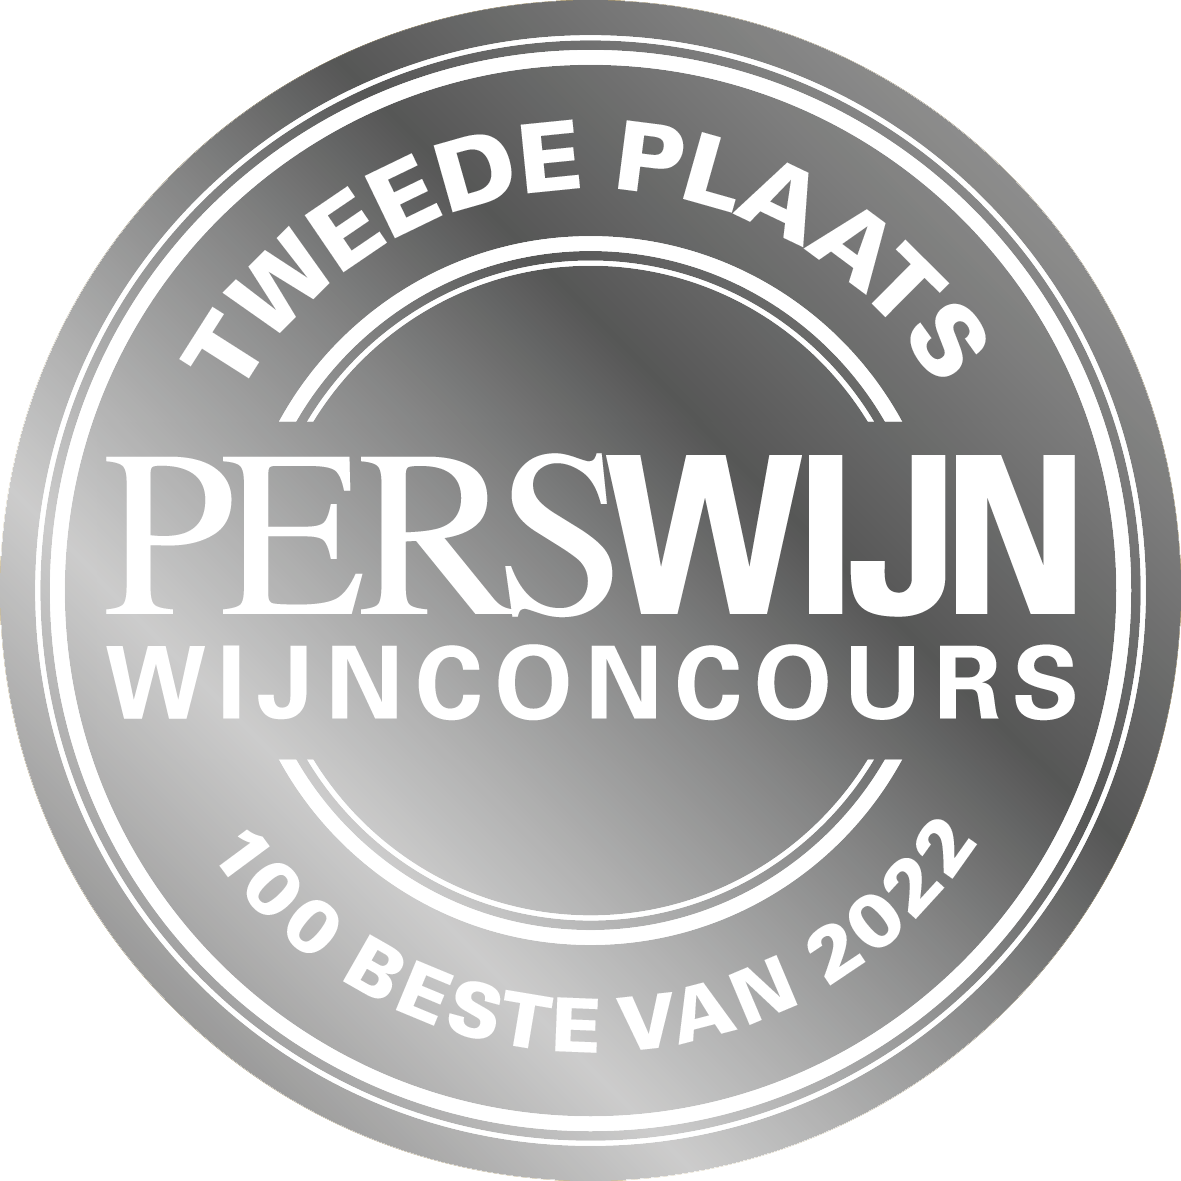 Tweede plaats Wijnconcours 2022